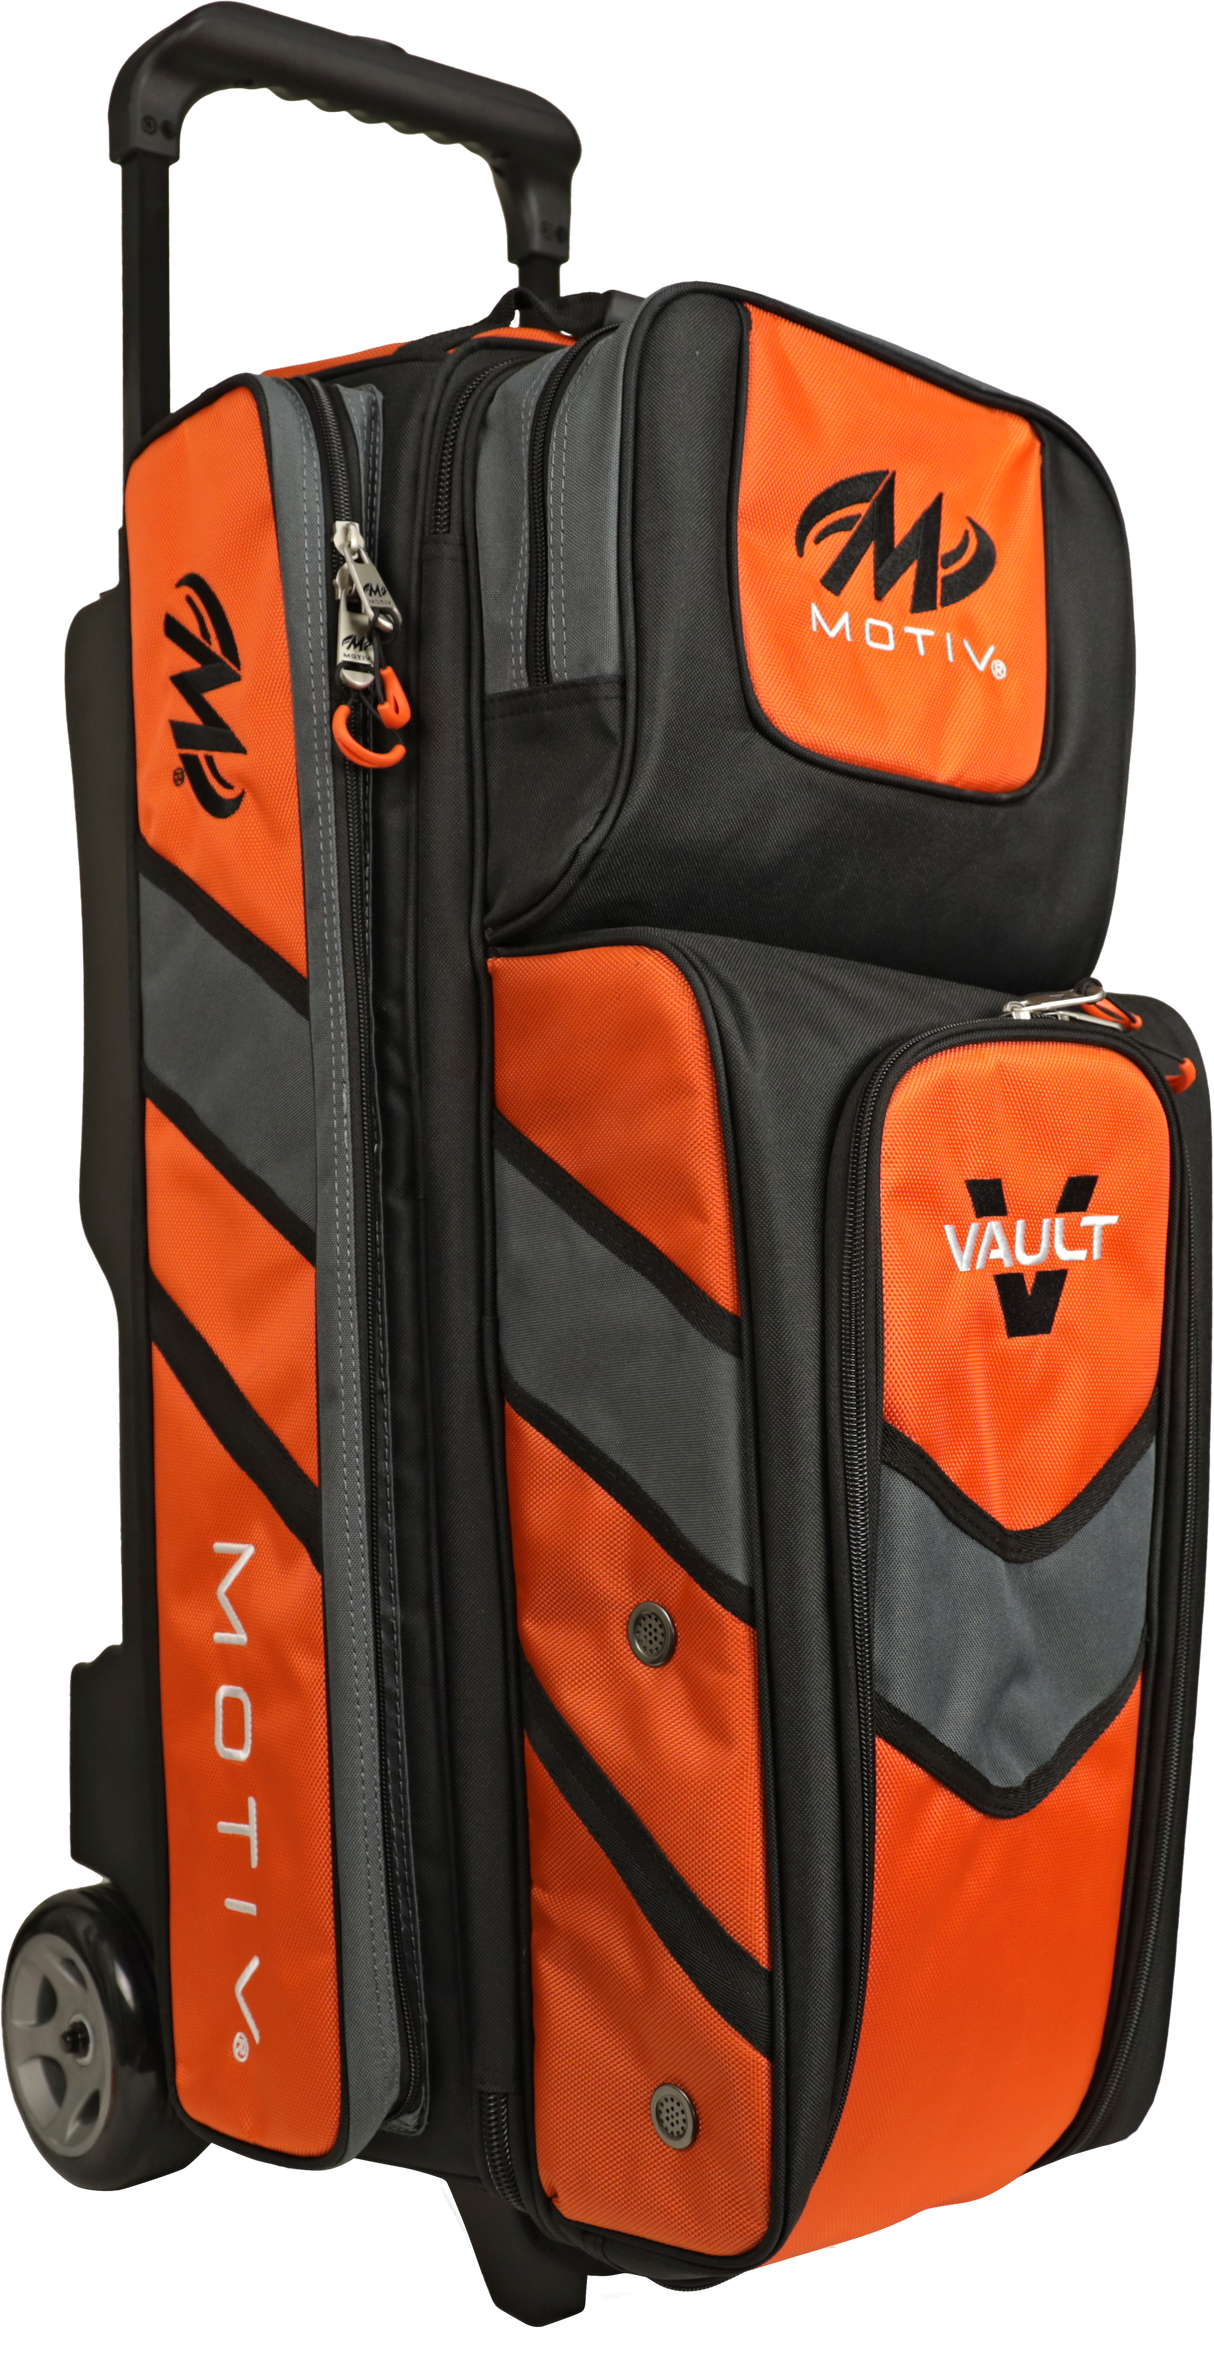 Motiv Vault 3 Ball Triple Roller Tangerine Bowling Bag suitcase league tournament play sale discount coupon online pba tour